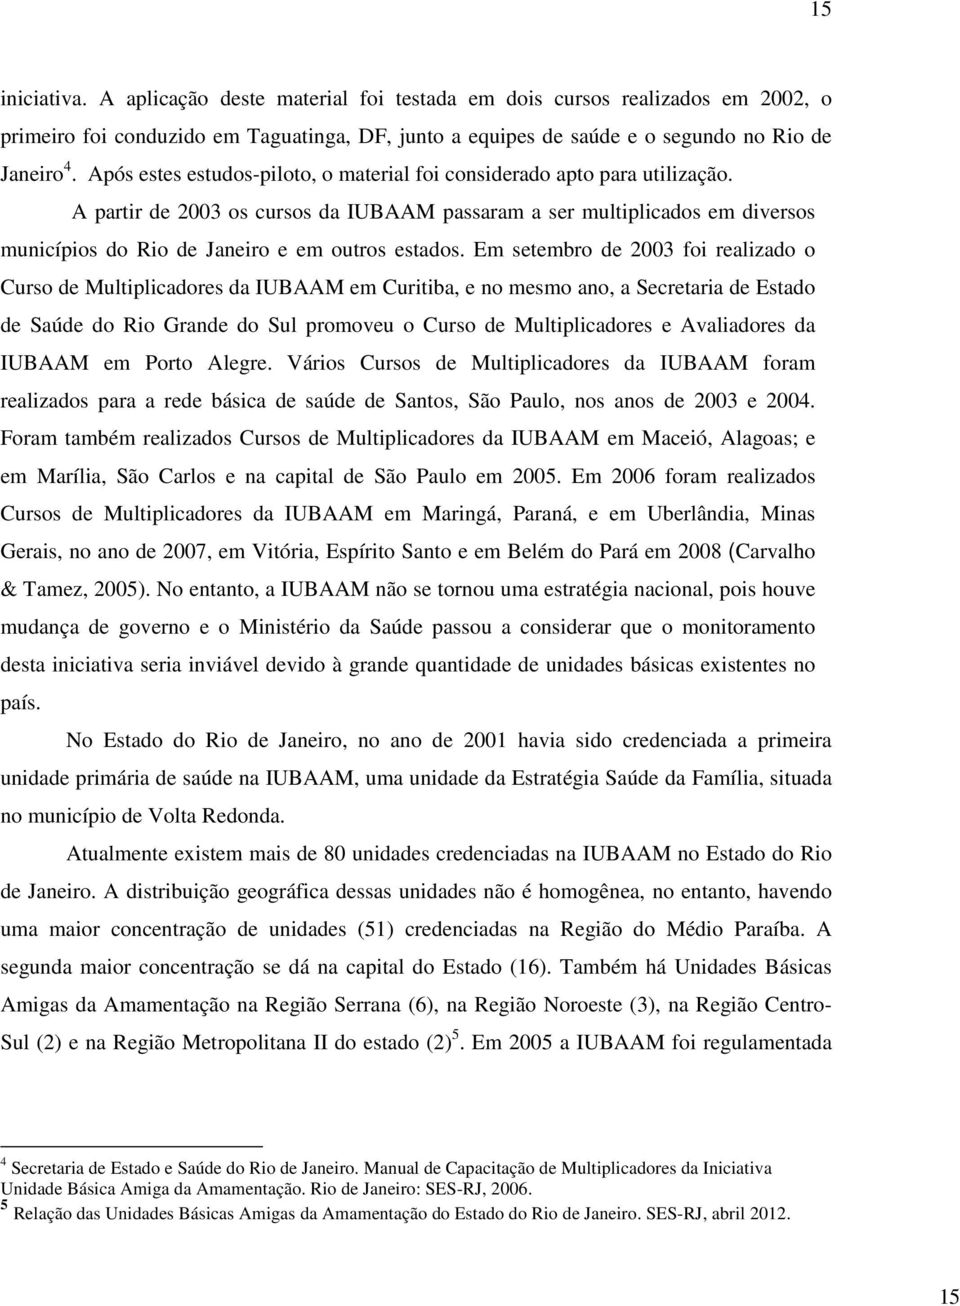 A partir de 2003 os cursos da IUBAAM passaram a ser multiplicados em diversos municípios do Rio de Janeiro e em outros estados.